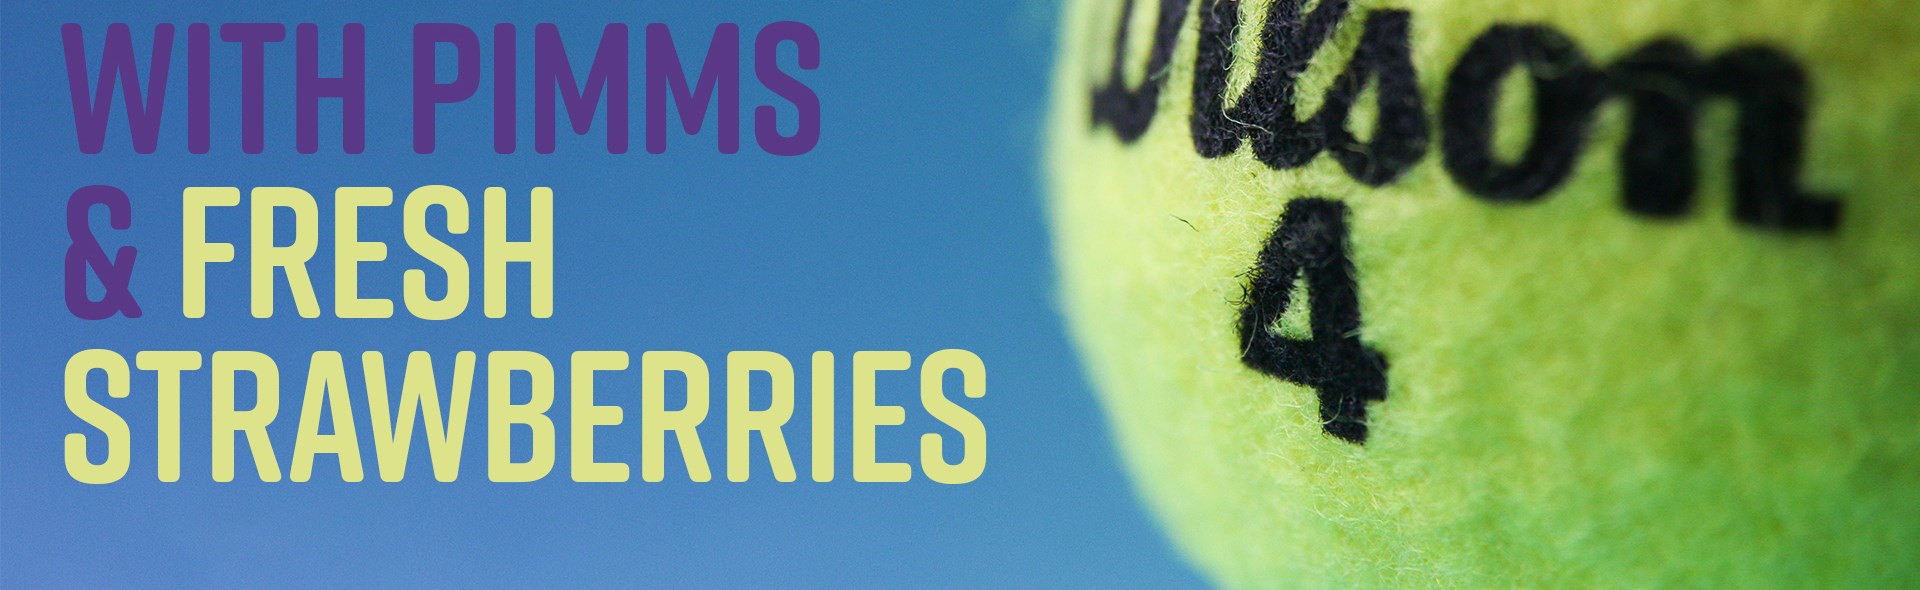 Wimbledon: Men's Final